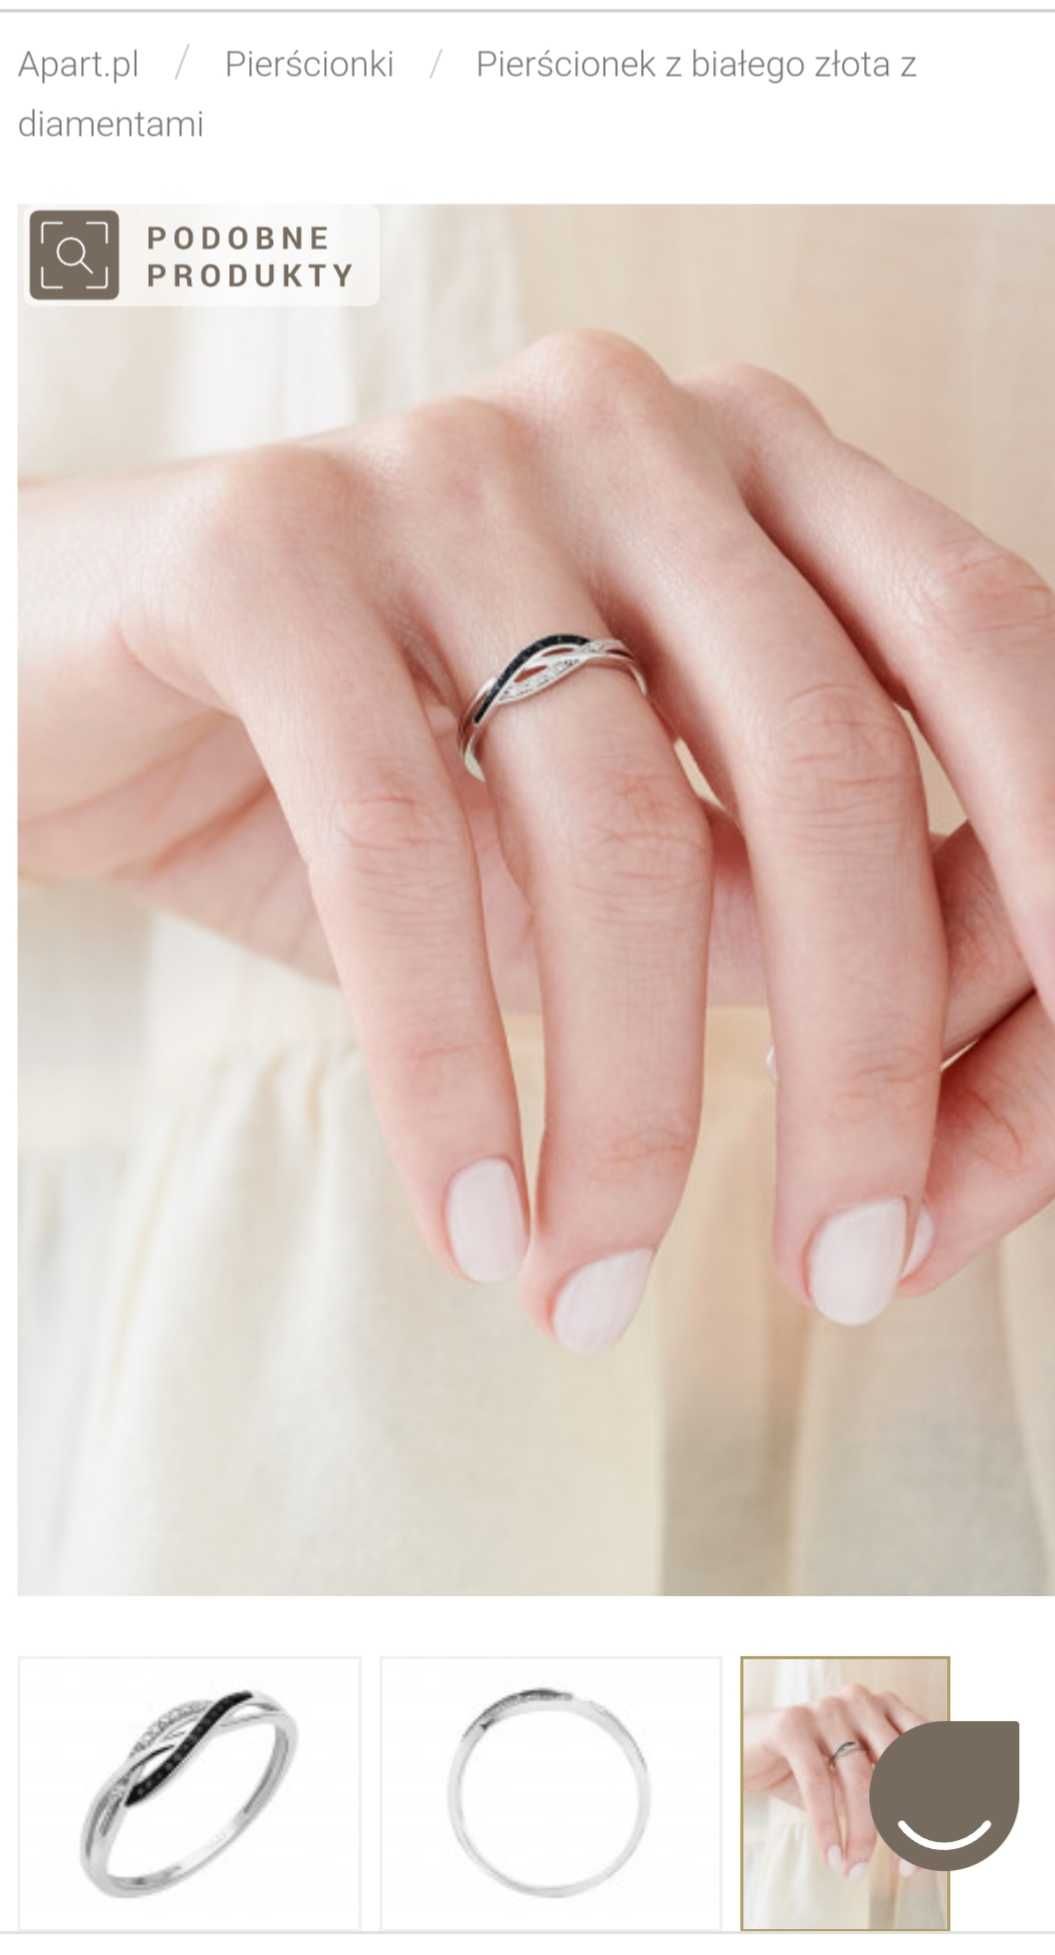 Apart śliczny pierścionek zaręczynowy białe złoto diamenty